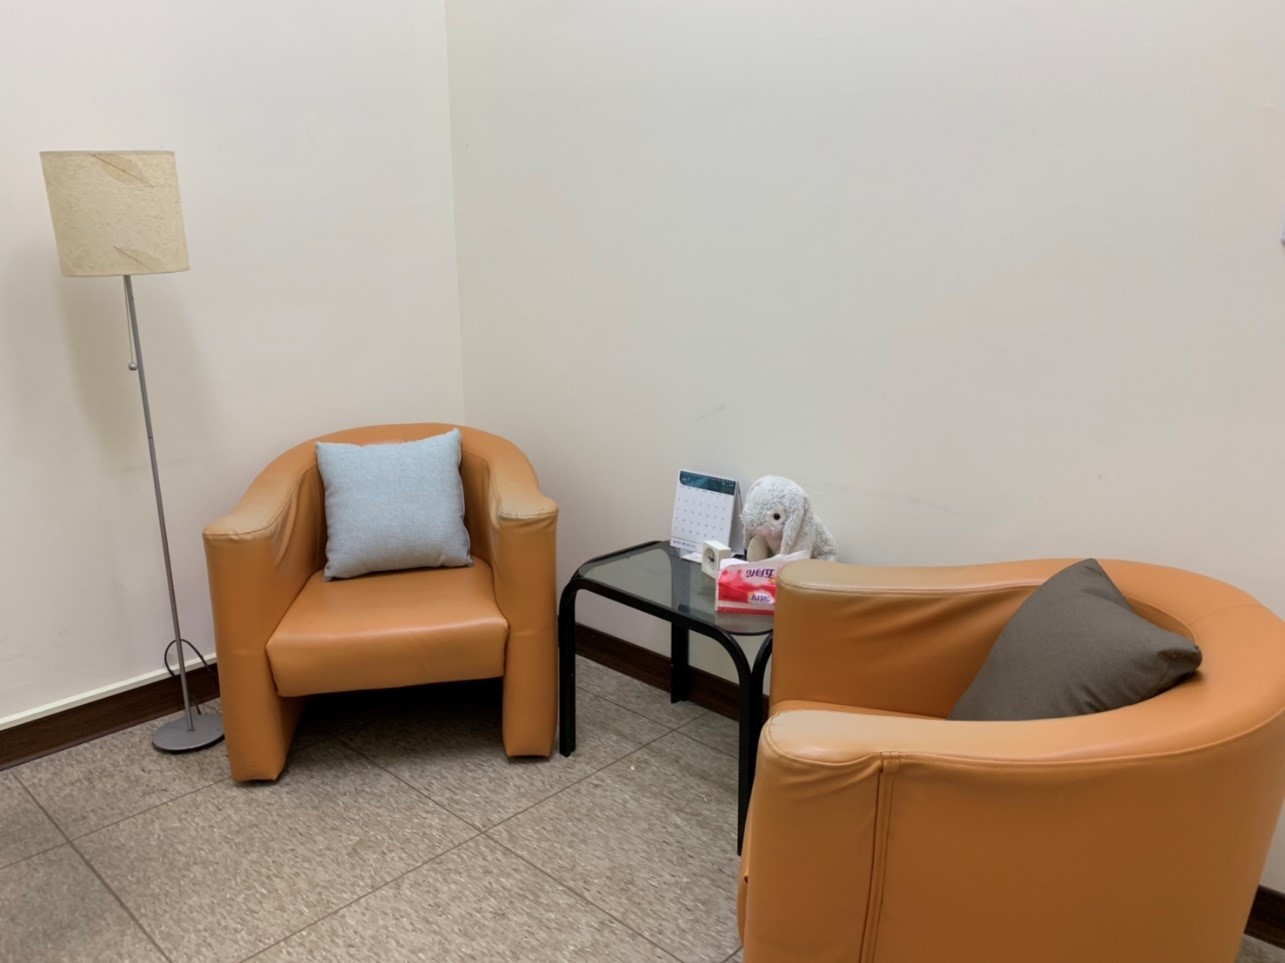 個別諮商室(二)提供單人沙發二張及小圓桌等安心環境。